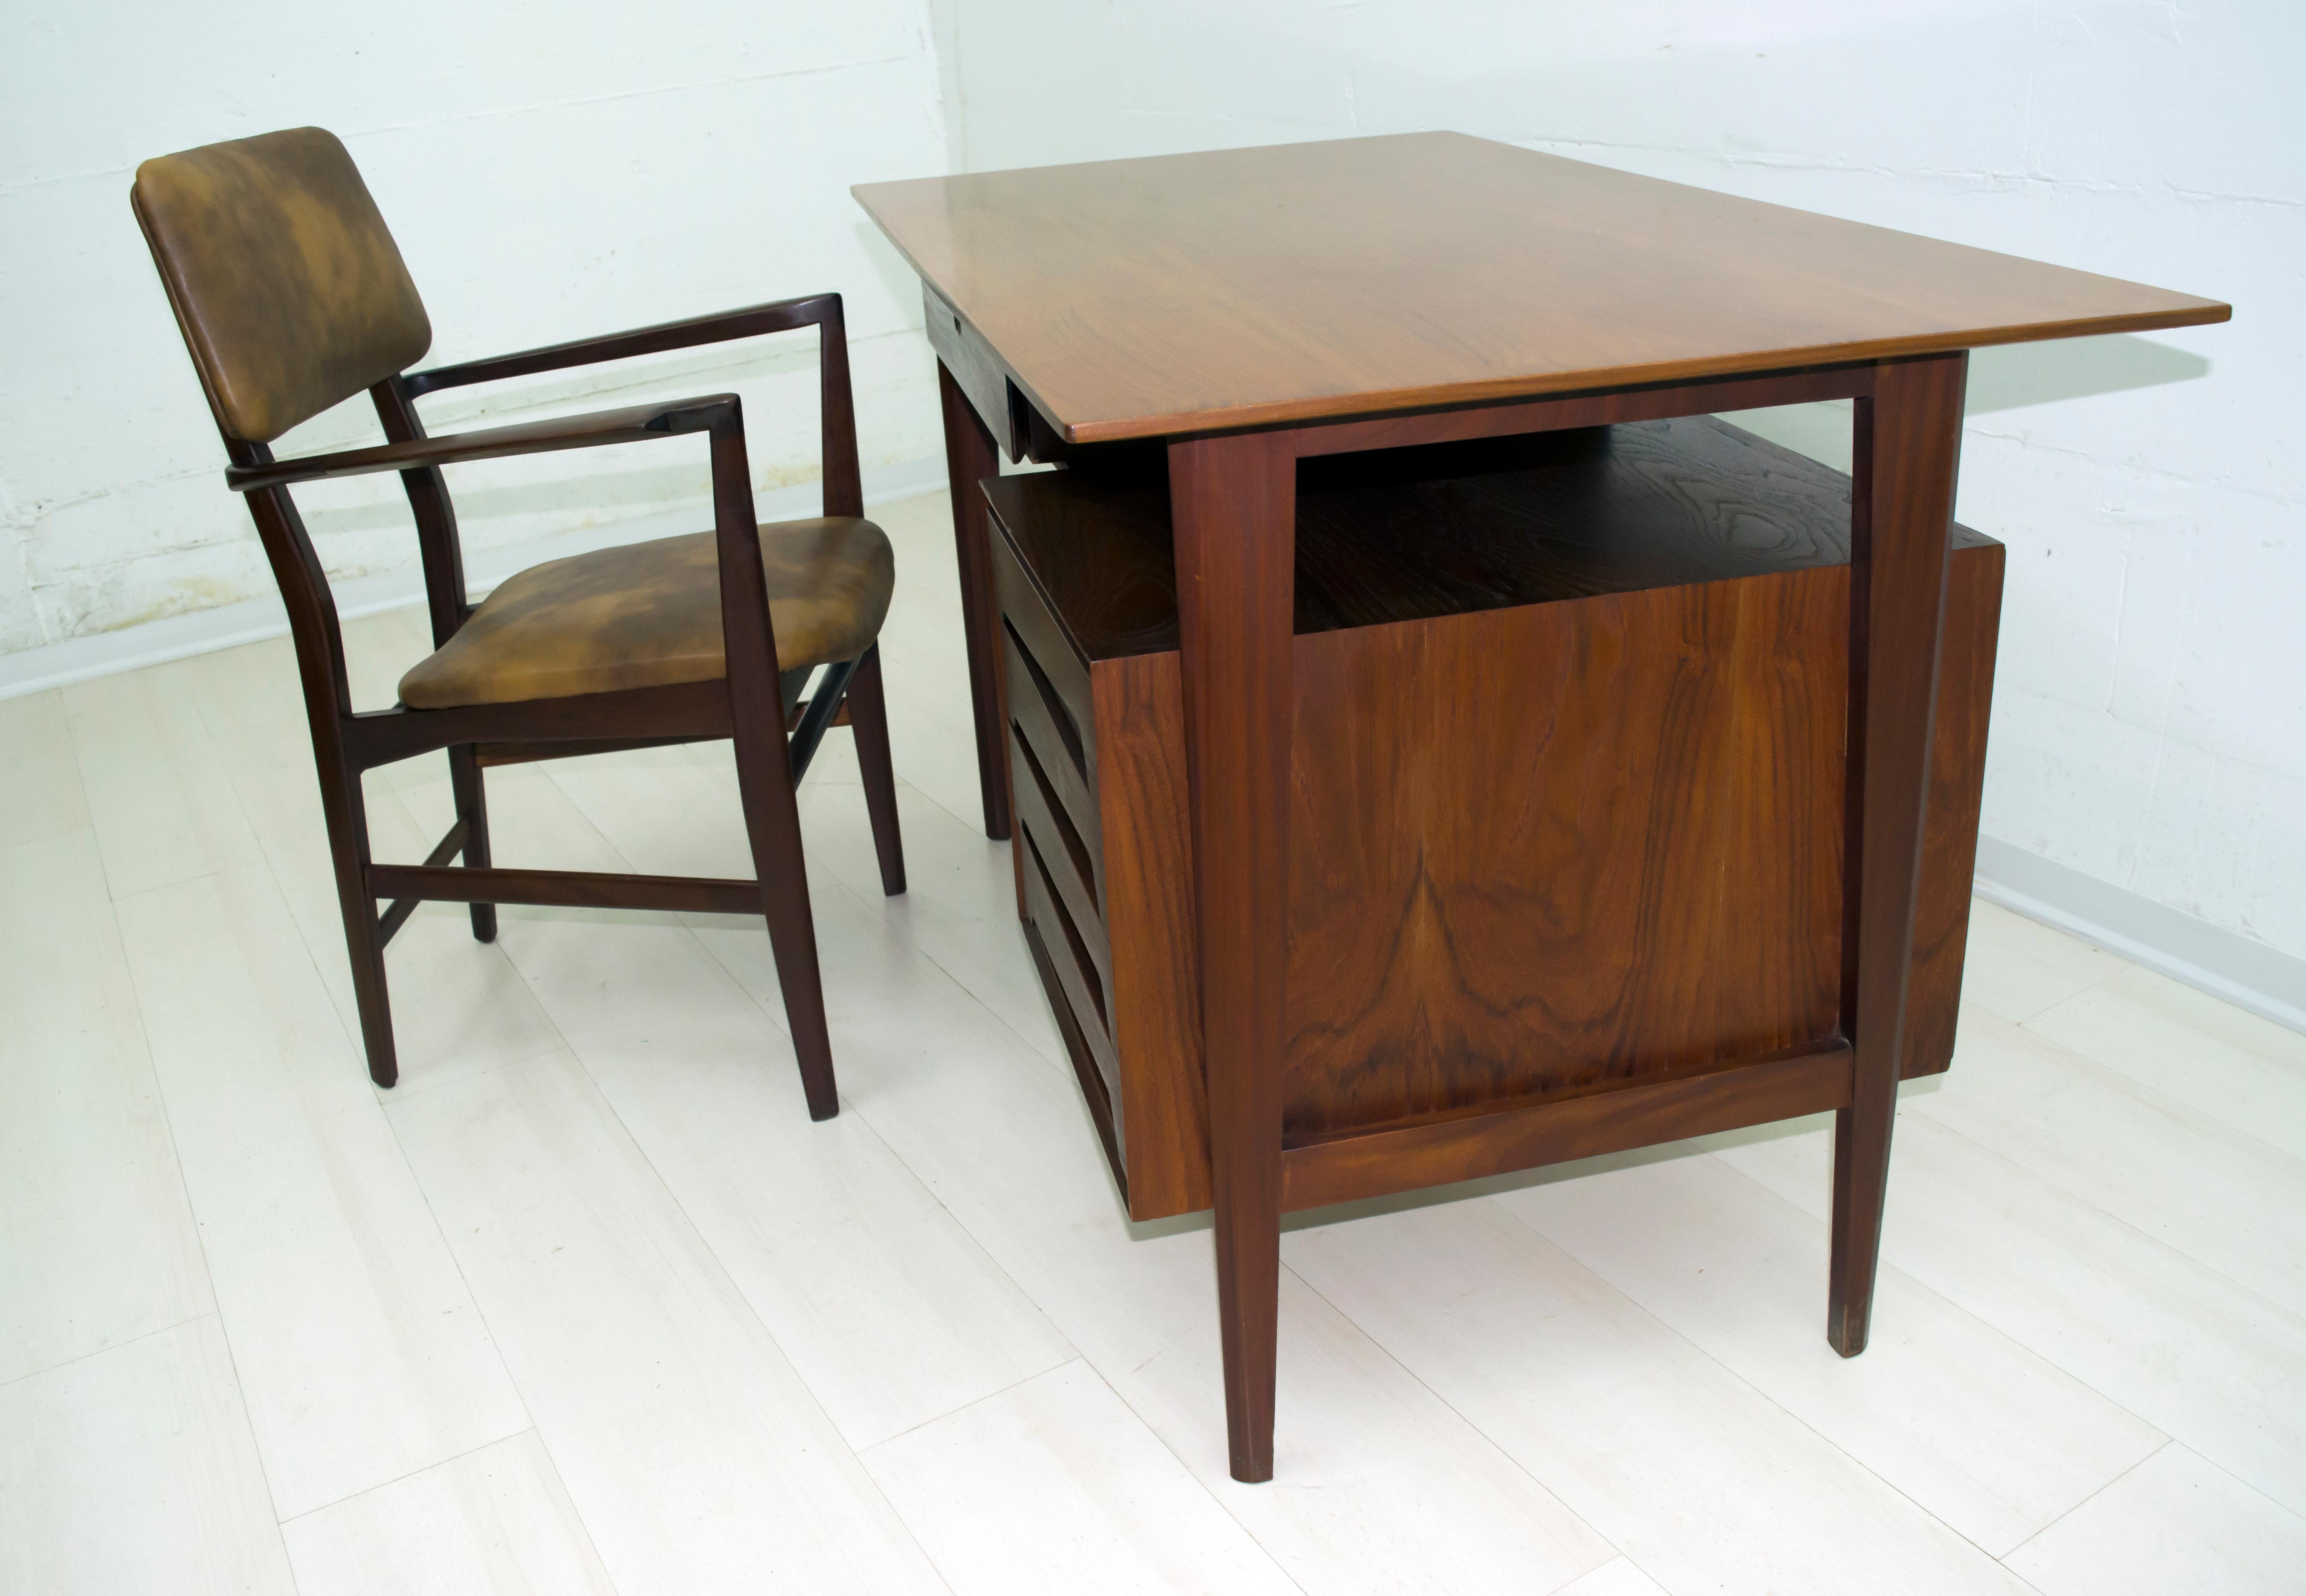 Dieser Schreibtisch mit Stuhl wurde von dem berühmten italienischen Designer Vittorio Dassi aus Teakholz entworfen, Italien, 1950er Jahre.

Die angegebenen Maße beziehen sich nur auf den Schreibtisch, während die Maße für den Stuhl allein sind: 
cm